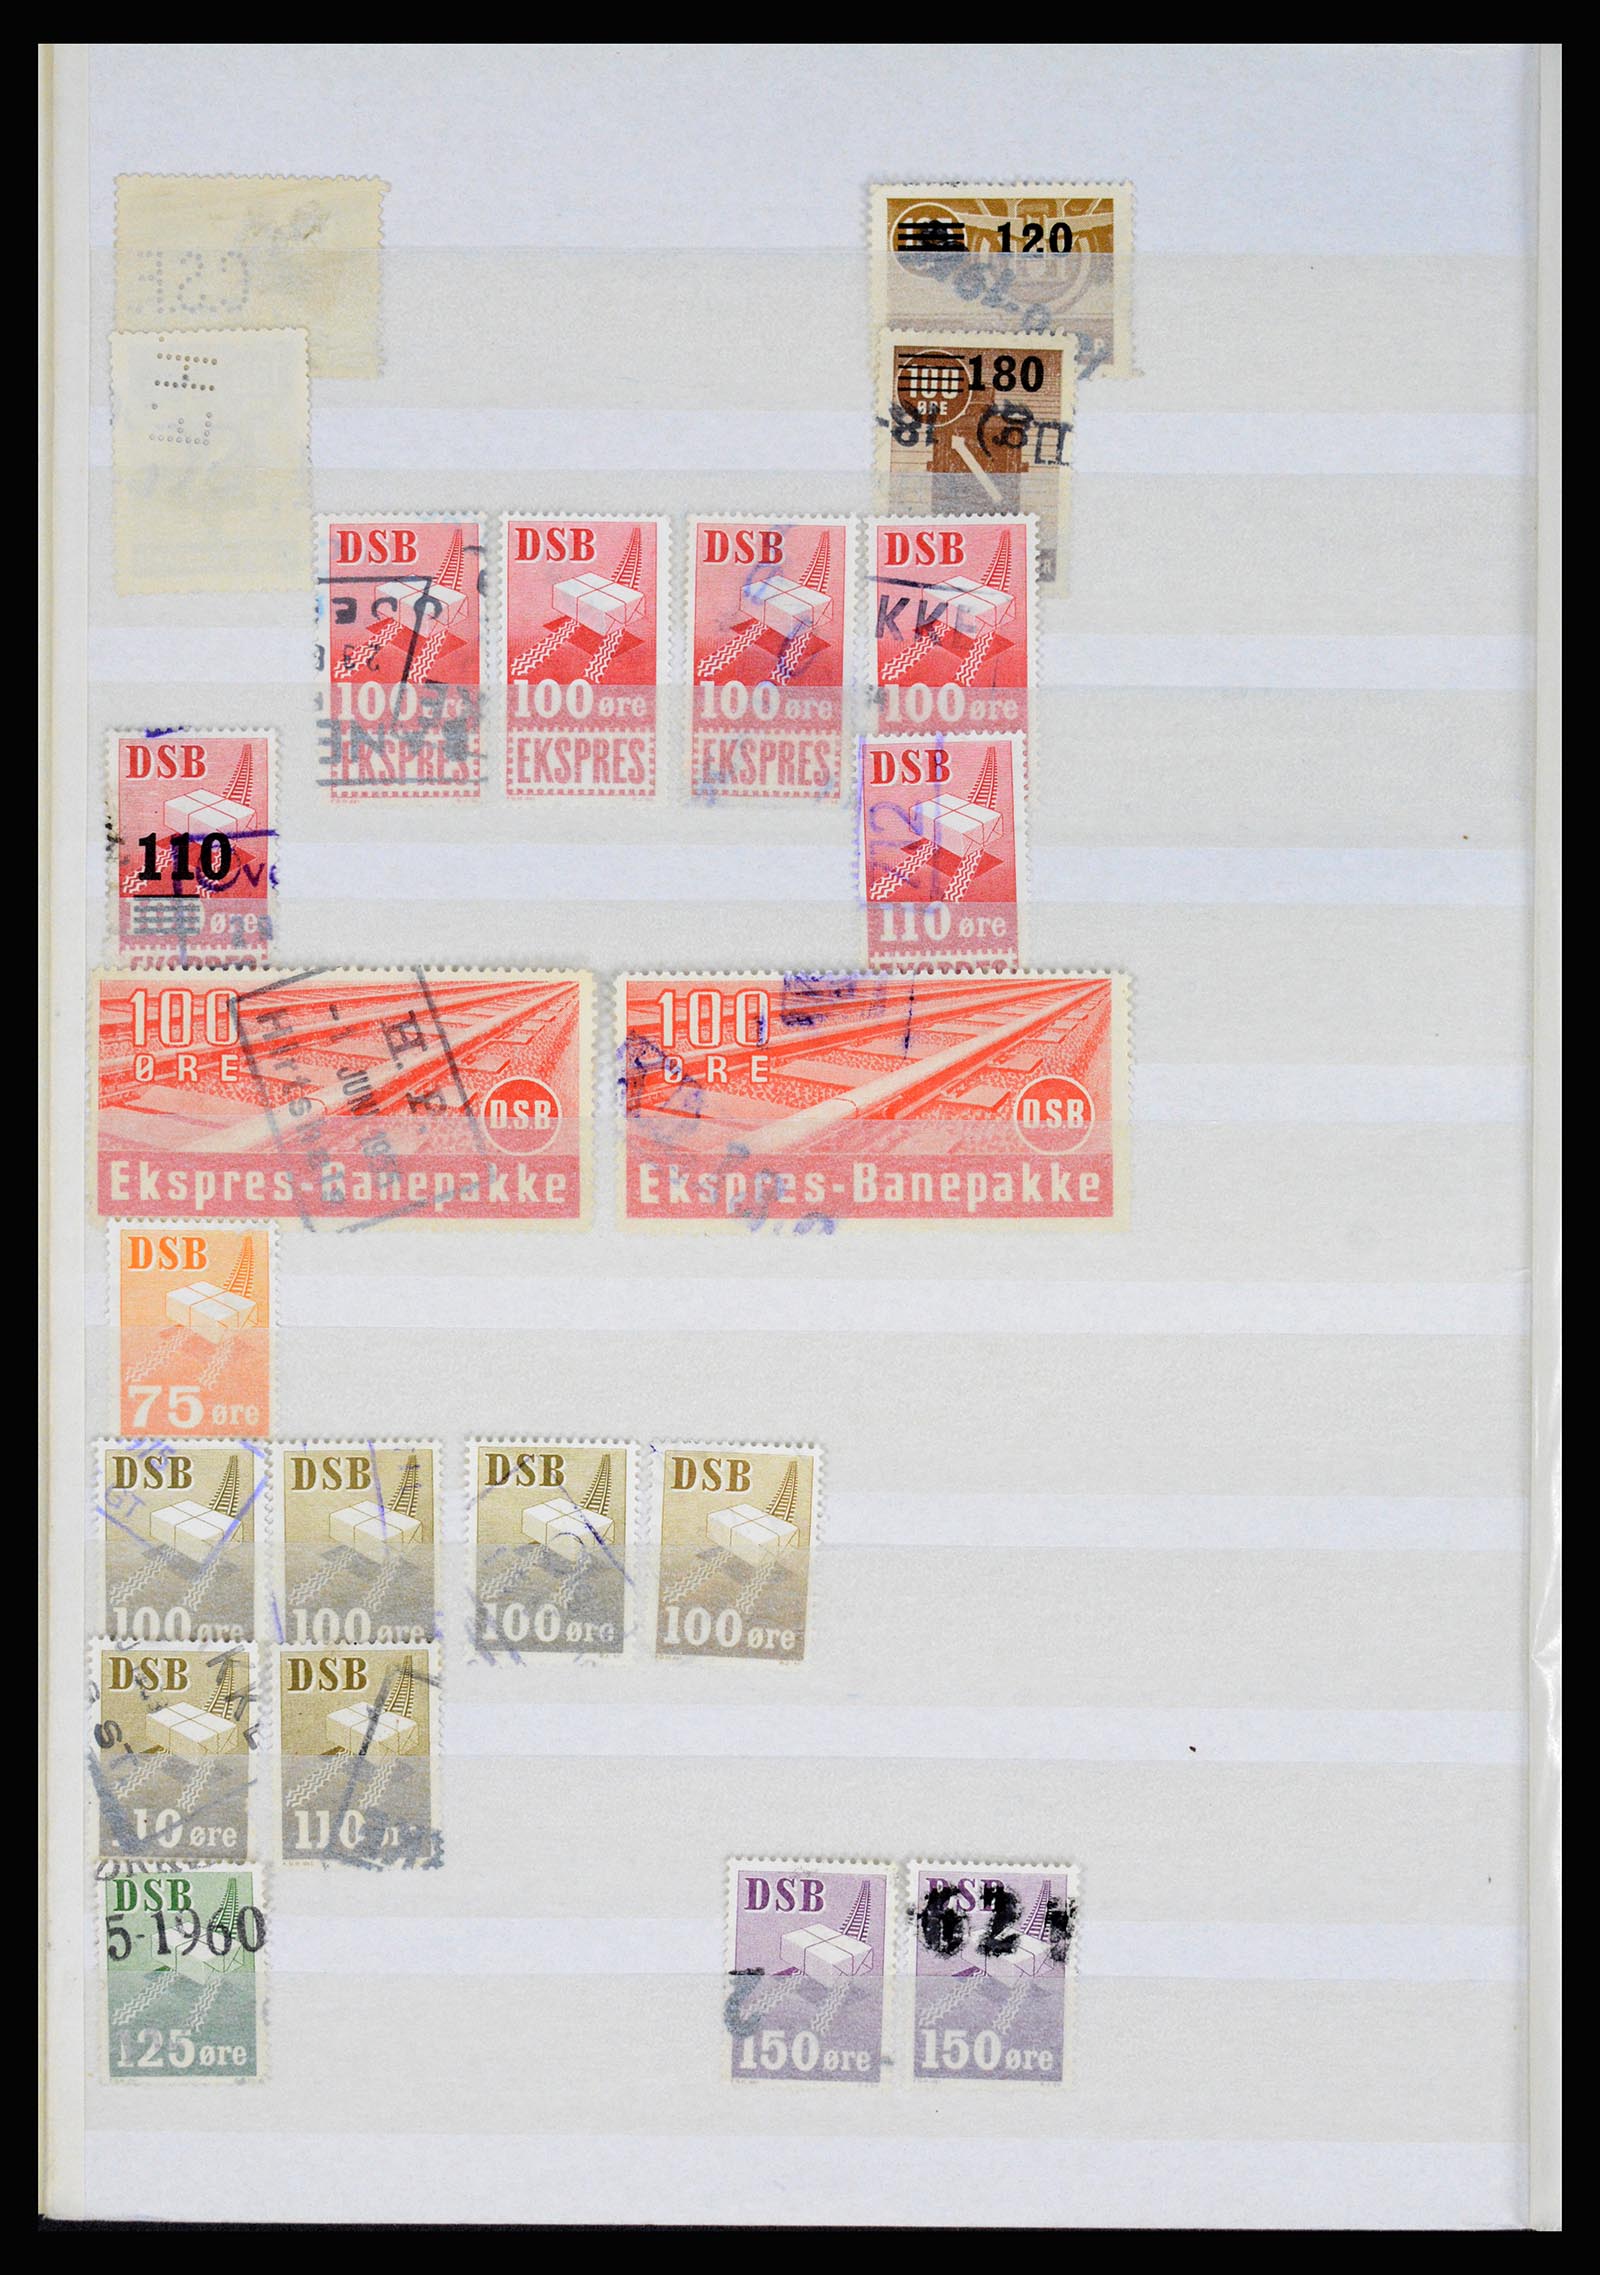 36982 010 - Postzegelverzameling 36982 Denemarken spoorwegzegels.